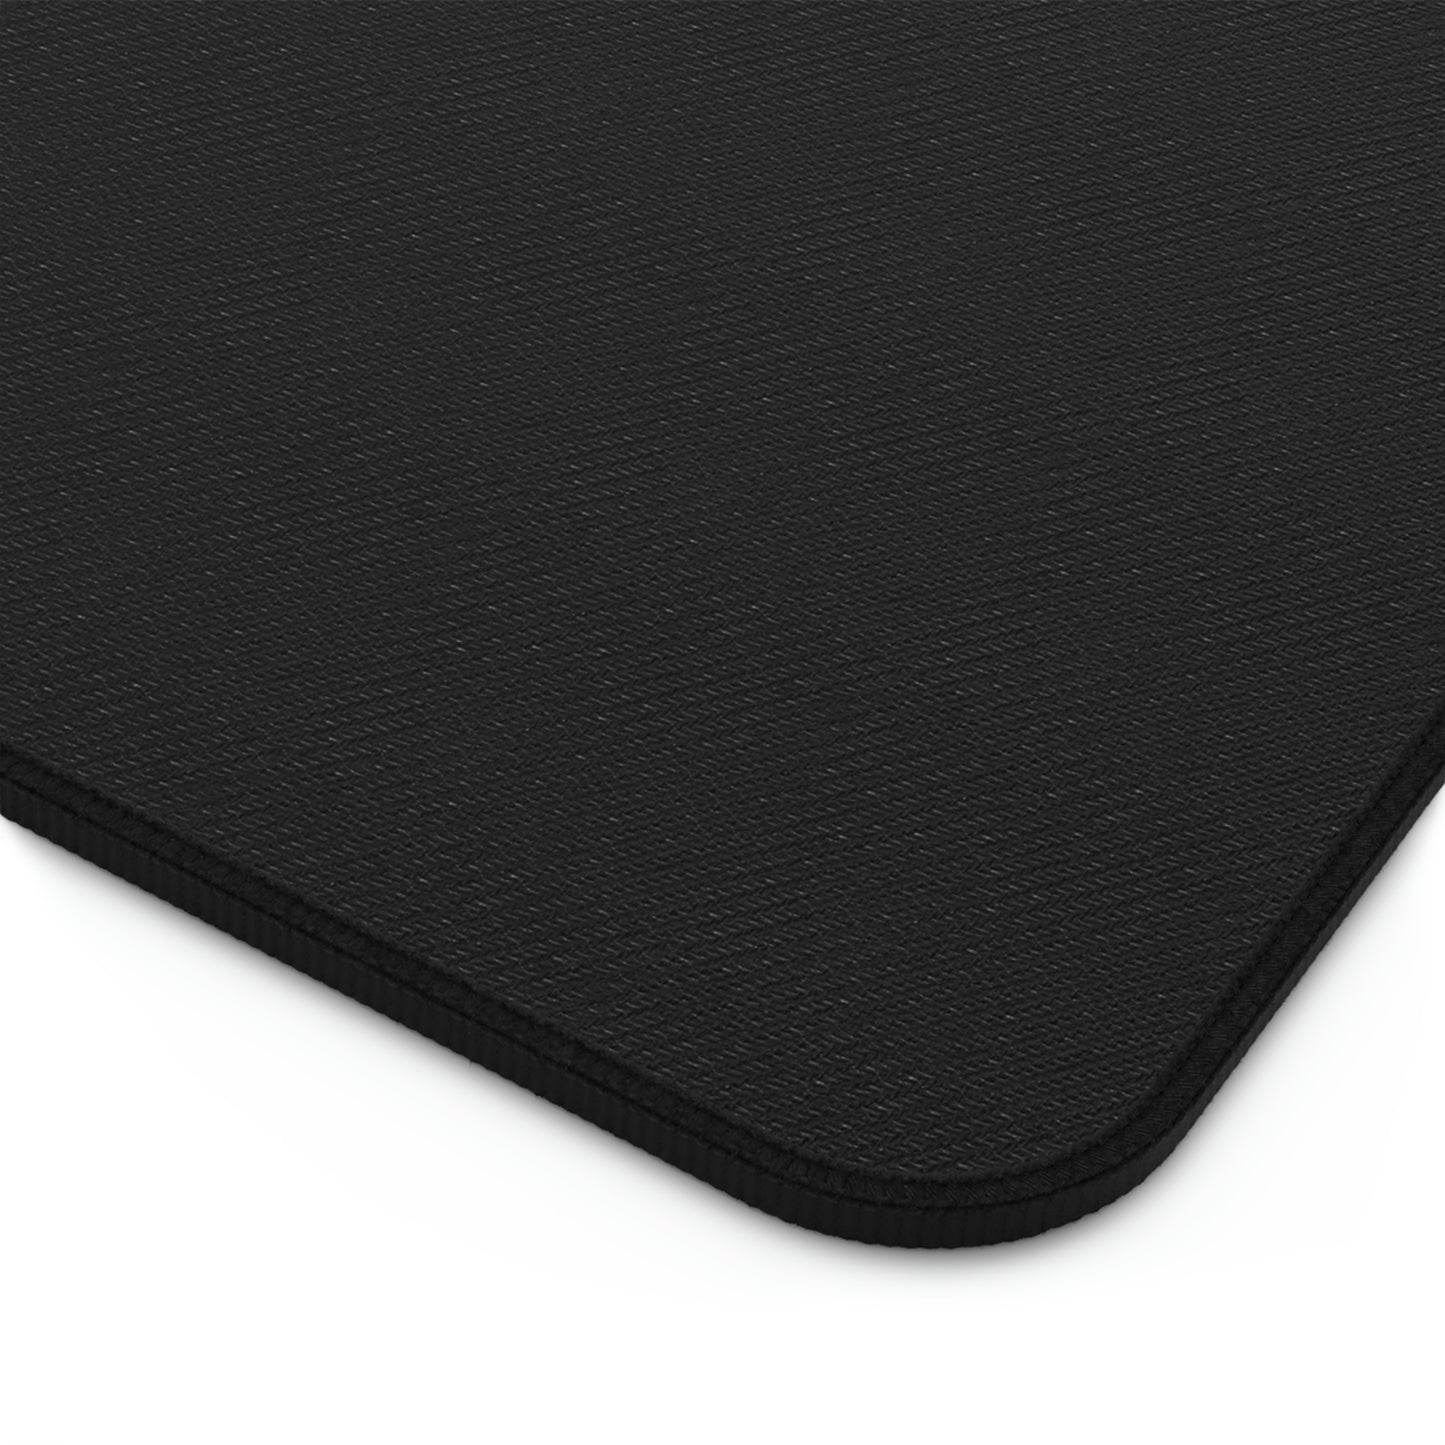 The black rubber bottom of a cotton candy sakura desk mat.